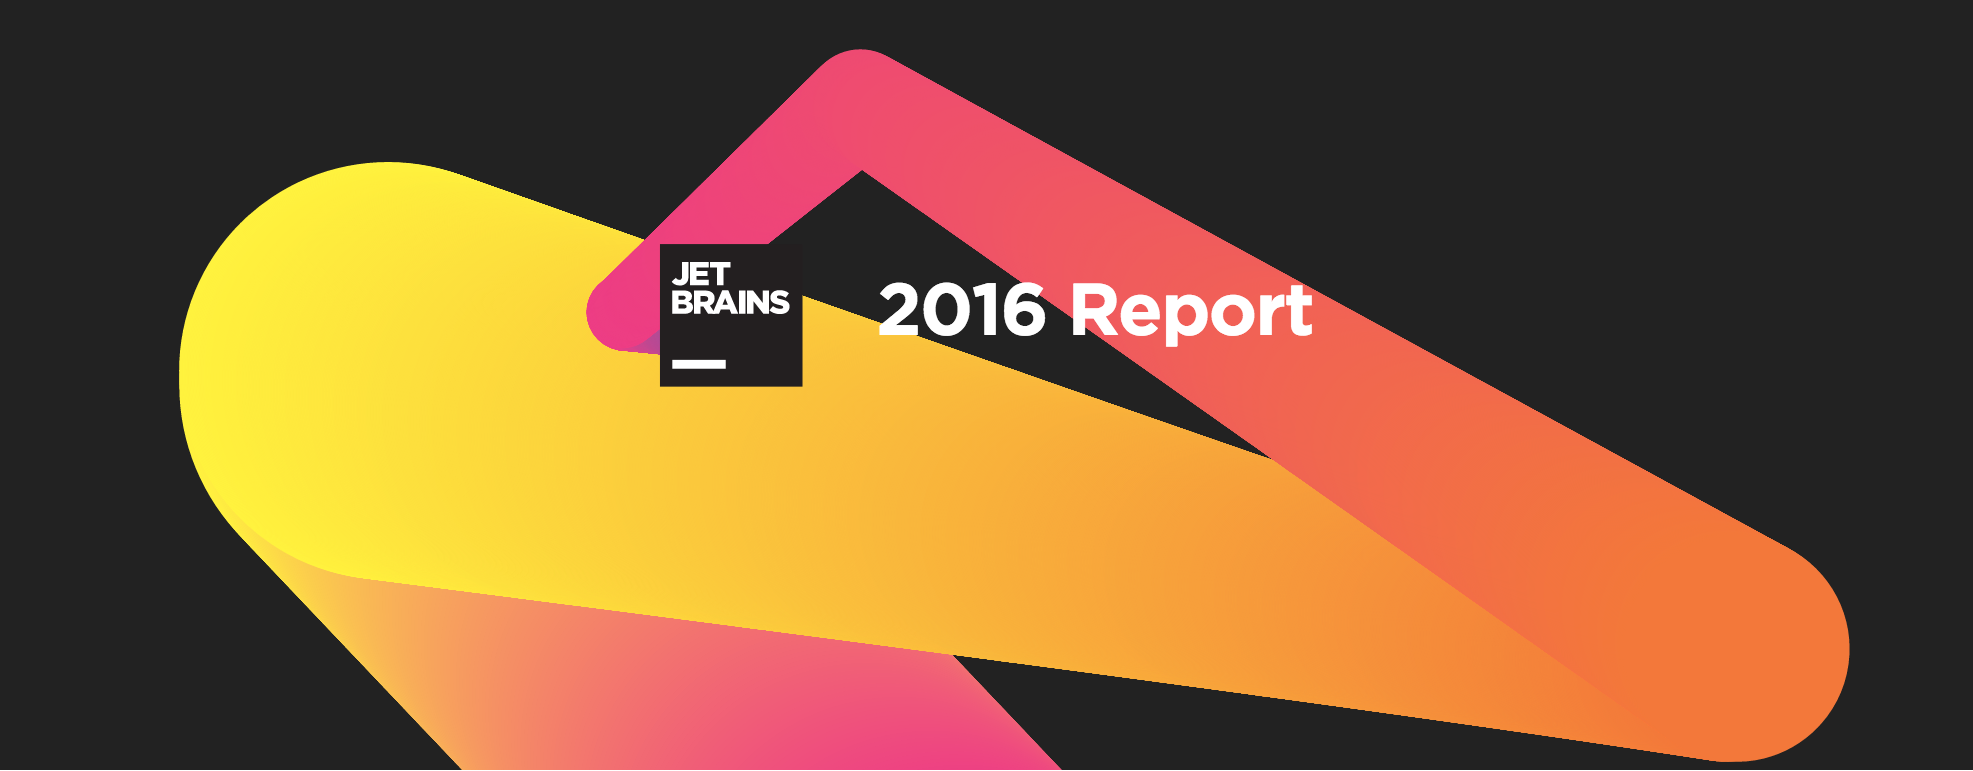 2016-report-header